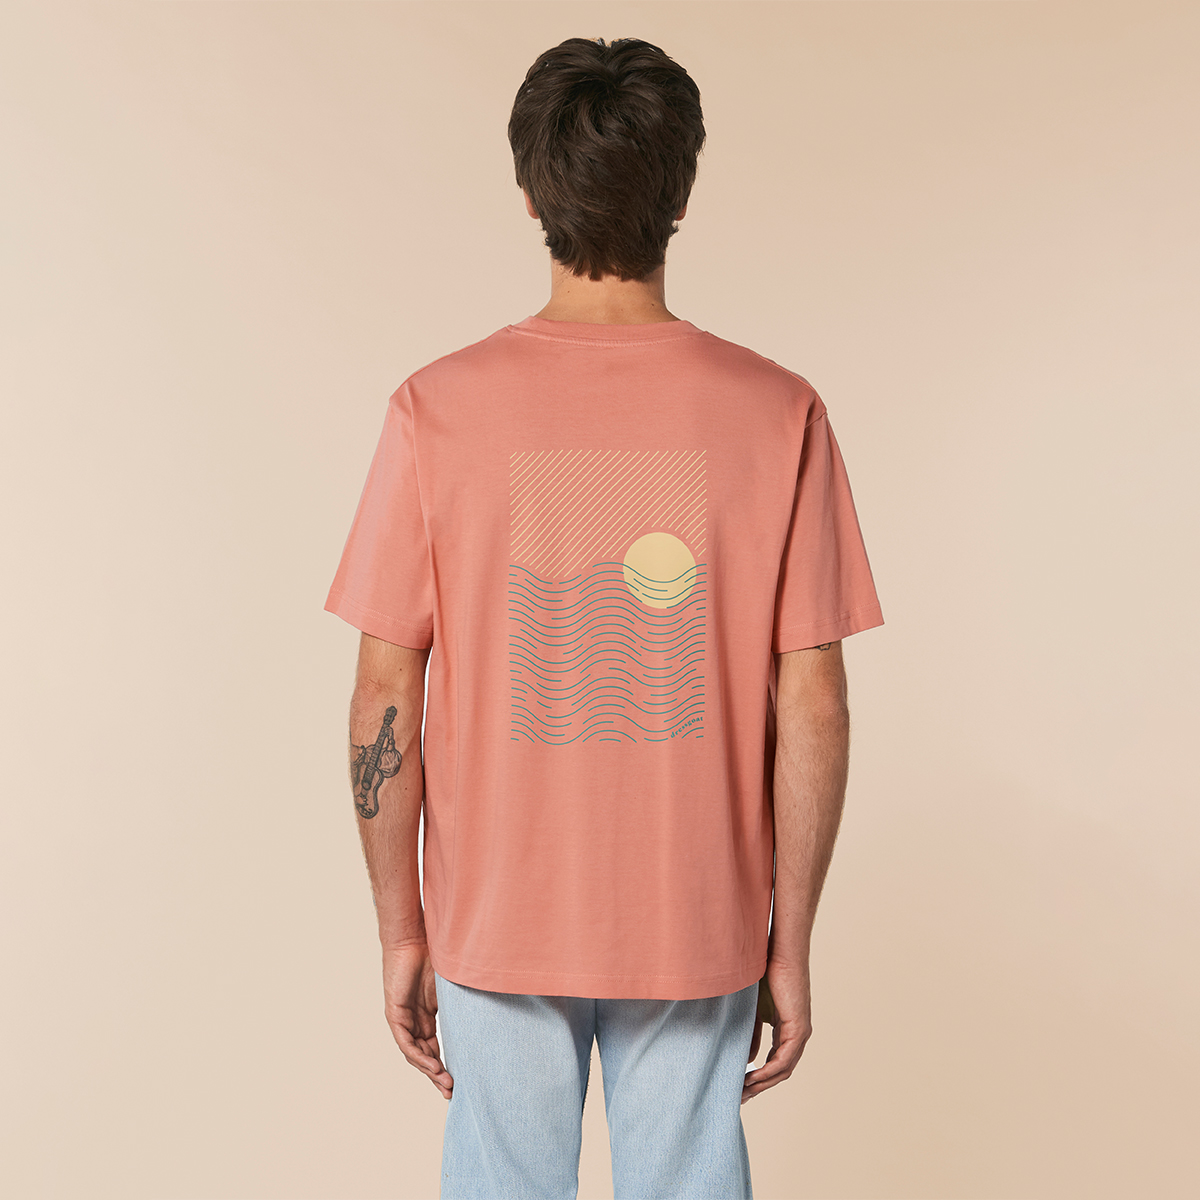 Rückenprint auf rosa orangenem T-Shirt